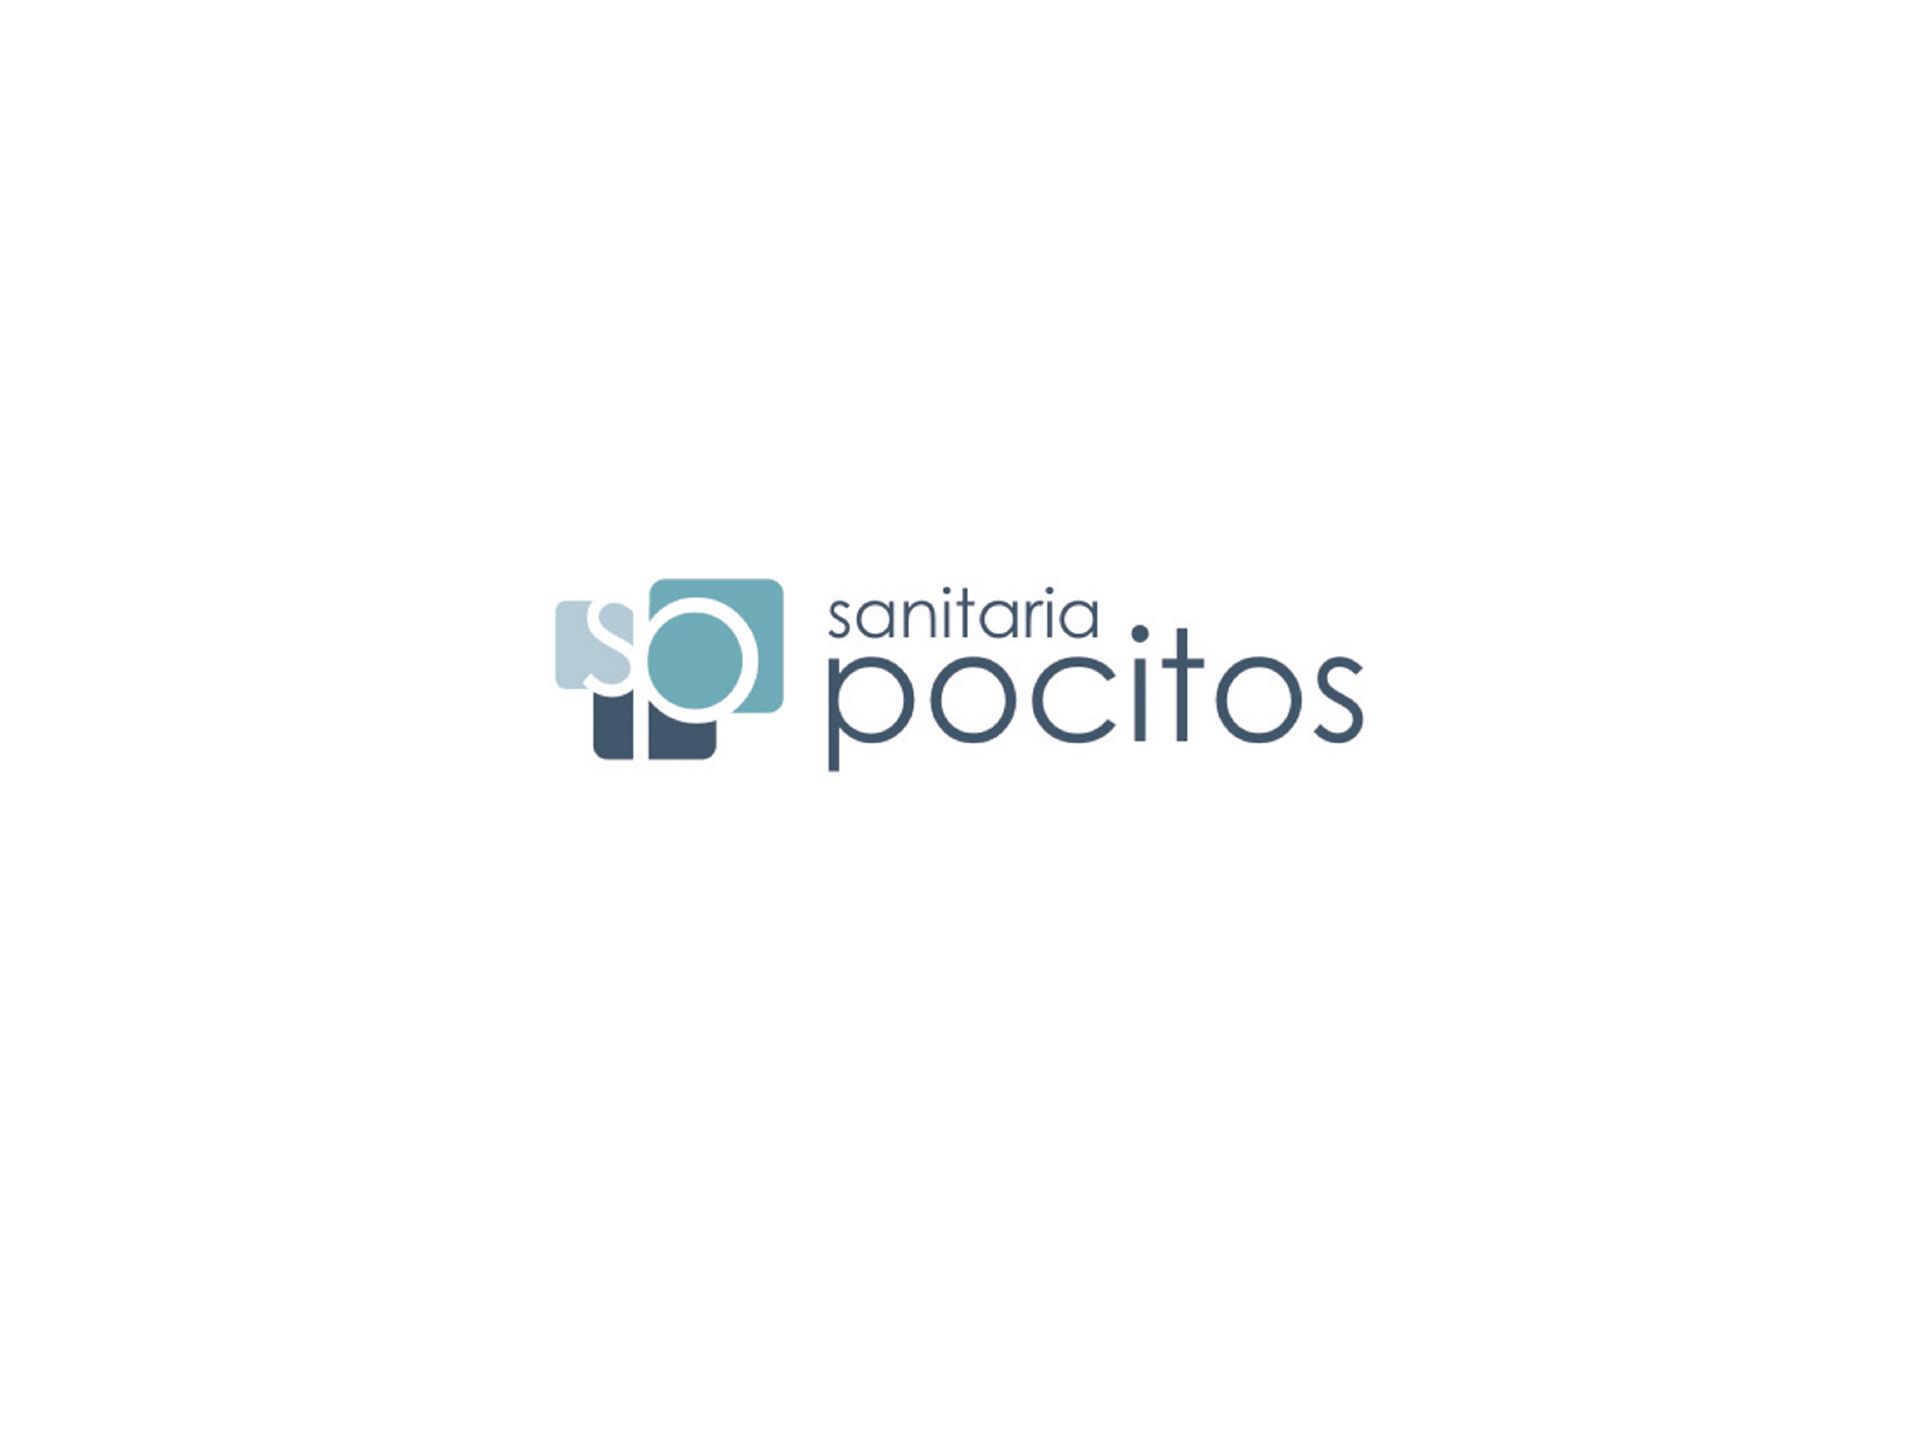 Logotipo Sanitaria Pocitos